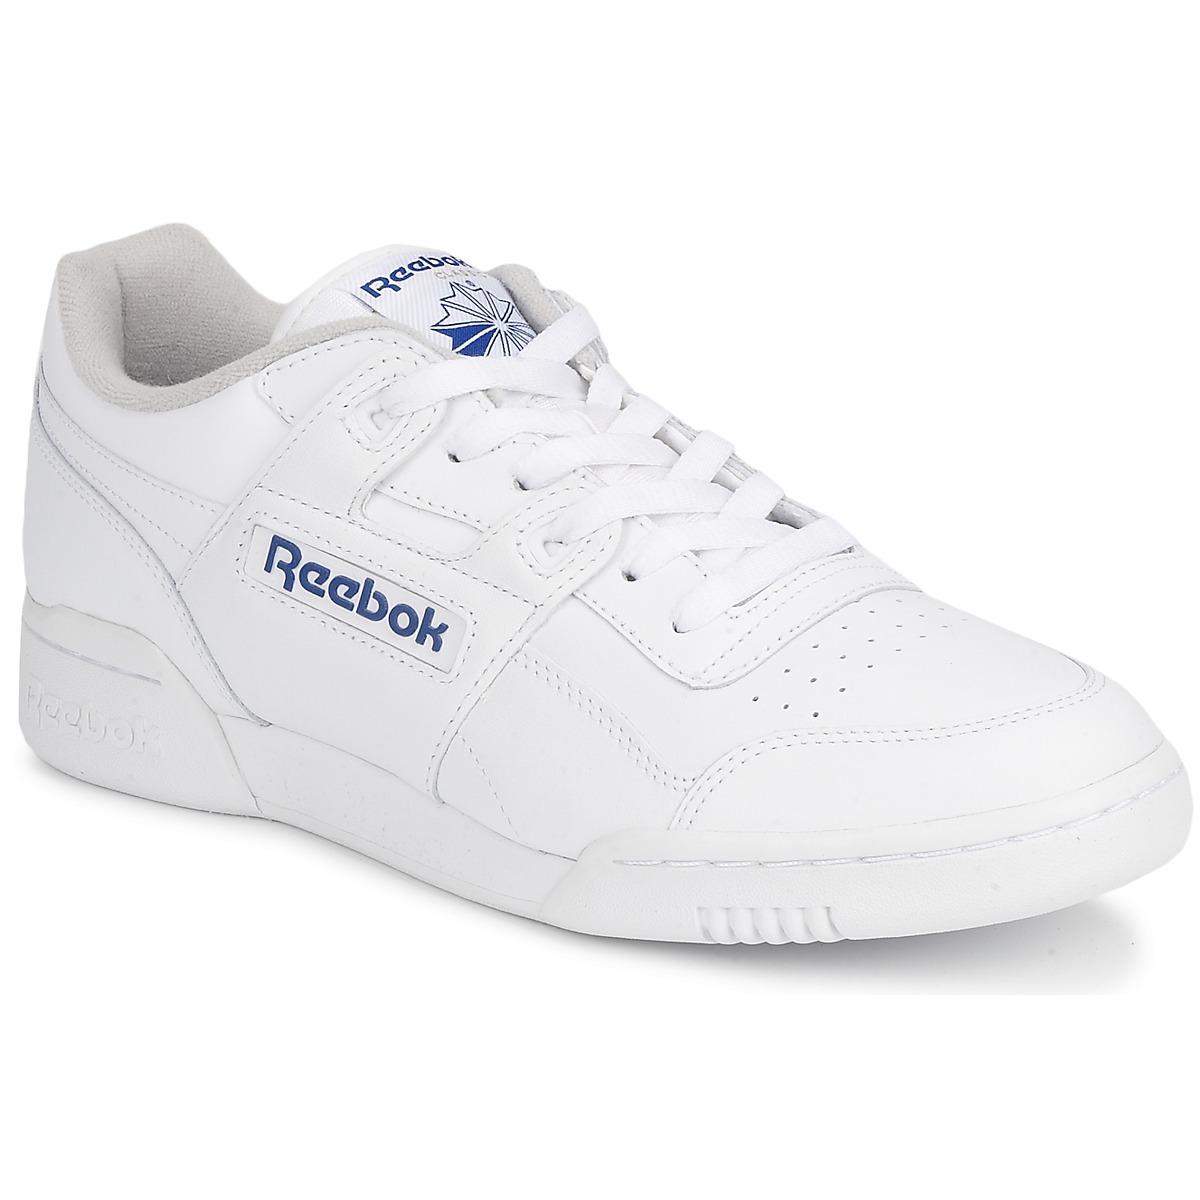 Schuhe Sneaker Low Reebok Classic WORKOUT PLUS Weiß